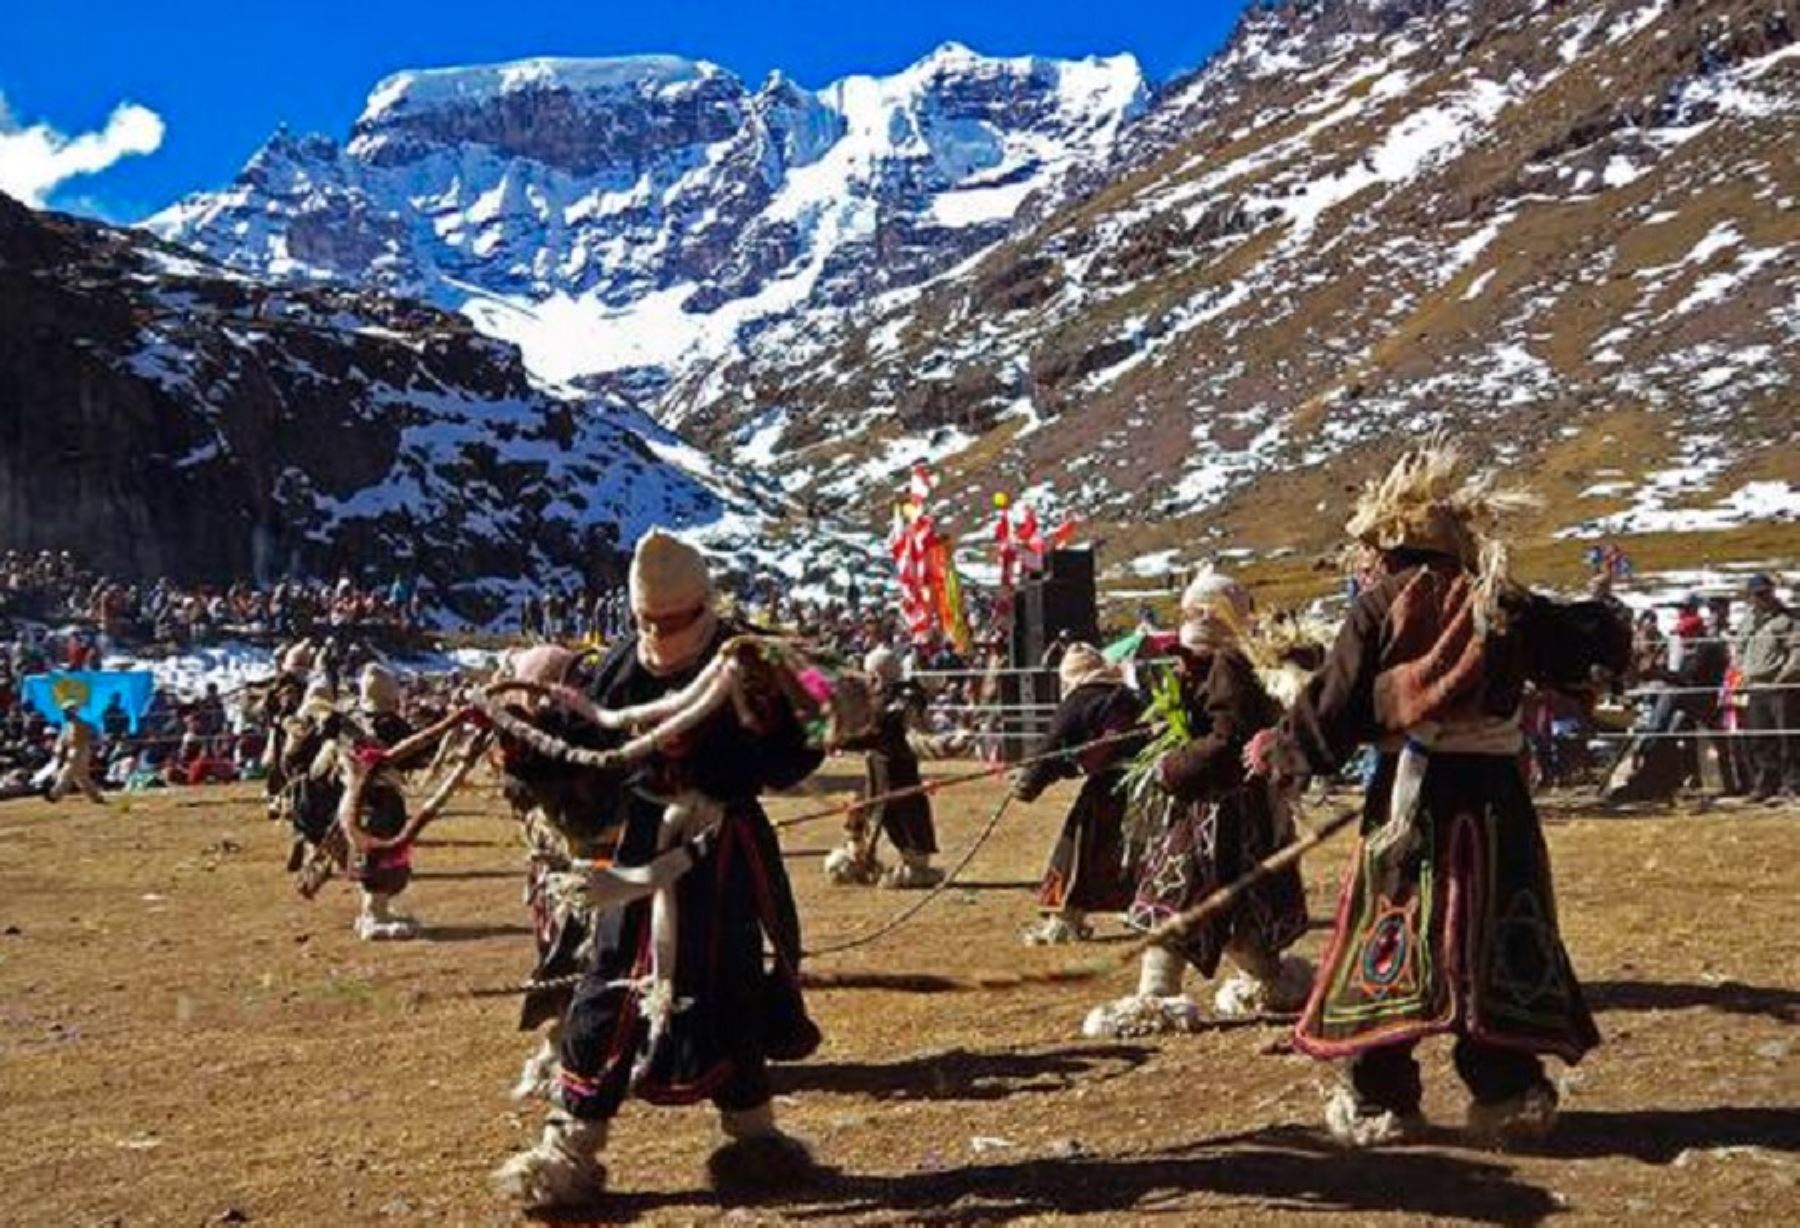 La festividad del Allincápac Raymi, por el Día del Campesino, es una de las más importantes del calendario jubilar y turístico de la región Puno, al pie del imponente nevado Allincápac, apu tutelar del distrito de Macusani en la provincia de Carabaya.